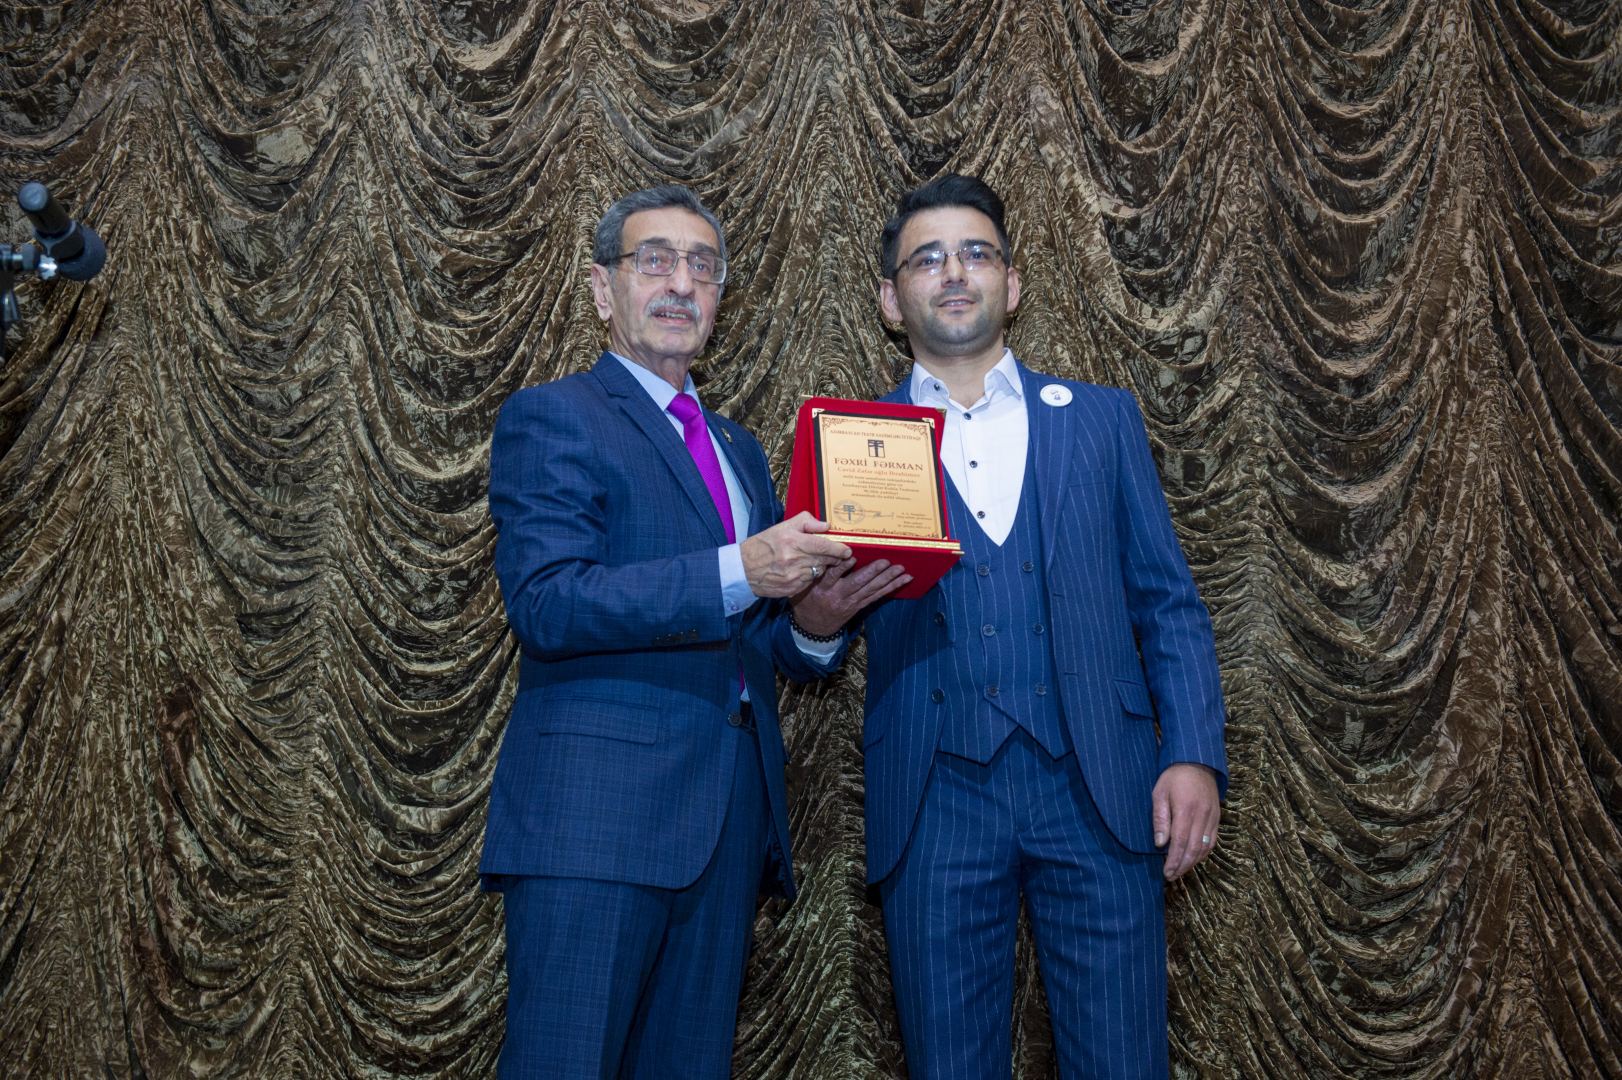 Азербайджанский театр кукол отметил юбилей красочной программой и наградами (ВИДЕО, ФОТО)